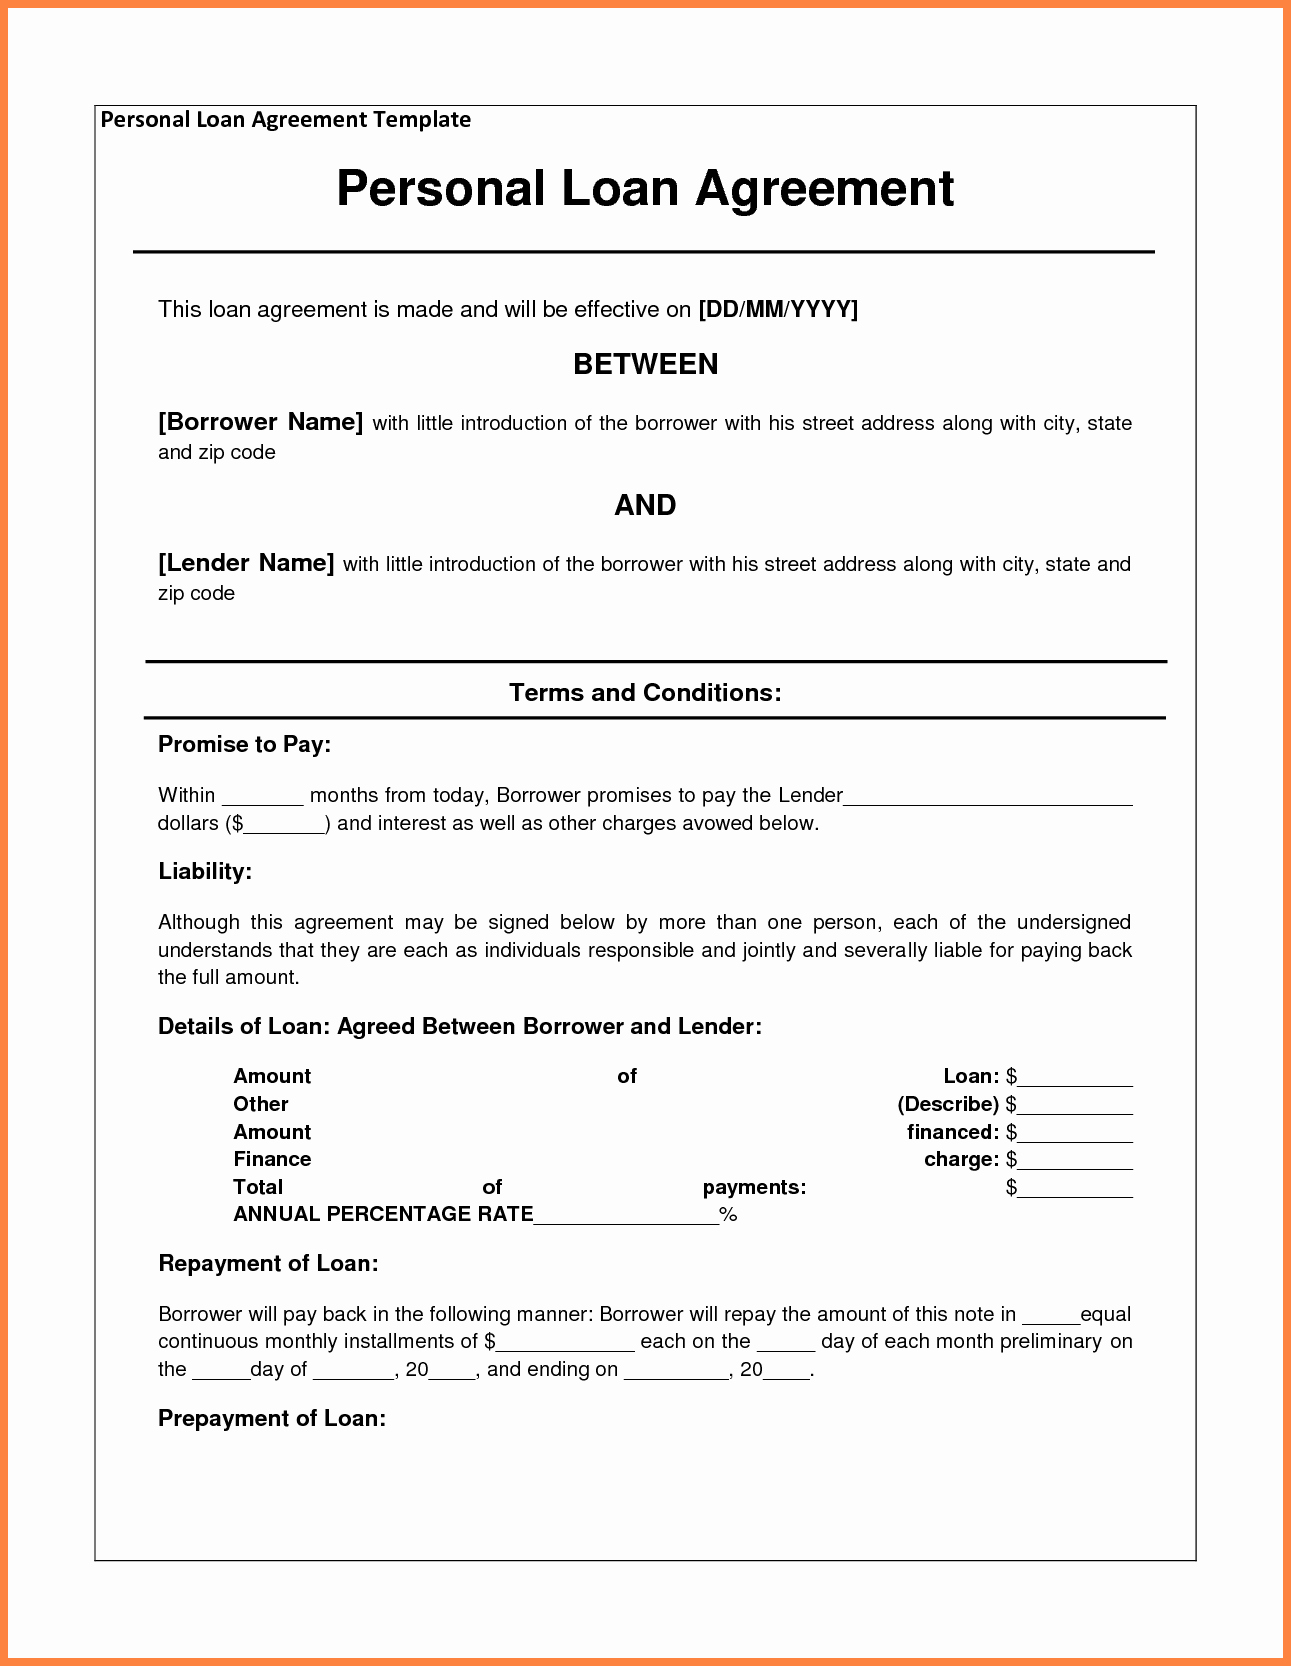 Loan Agreement Between Friends Template Inspirational 4 Personal Loan Agreement Template Between Friends